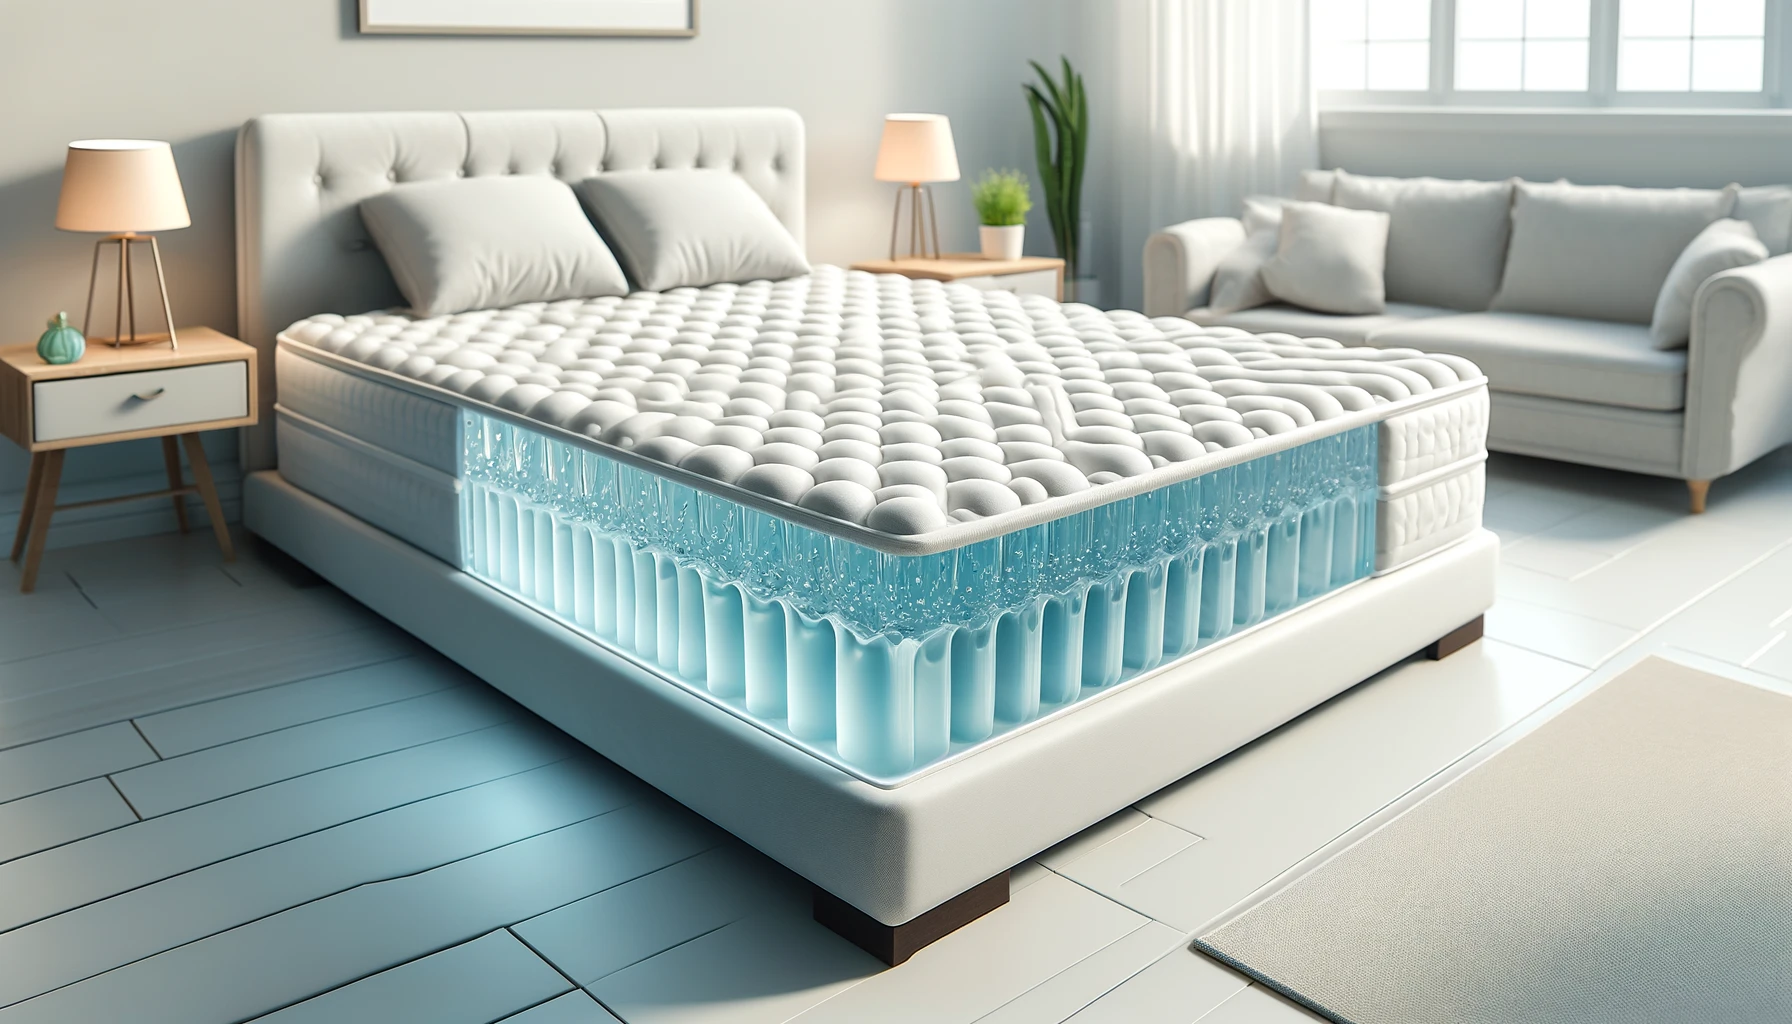 Современная спальня с гелевым матрасом, демонстрирующая дизайн внутреннего гелевого слоя, иллюстрирующий особенности гелевого матраса.